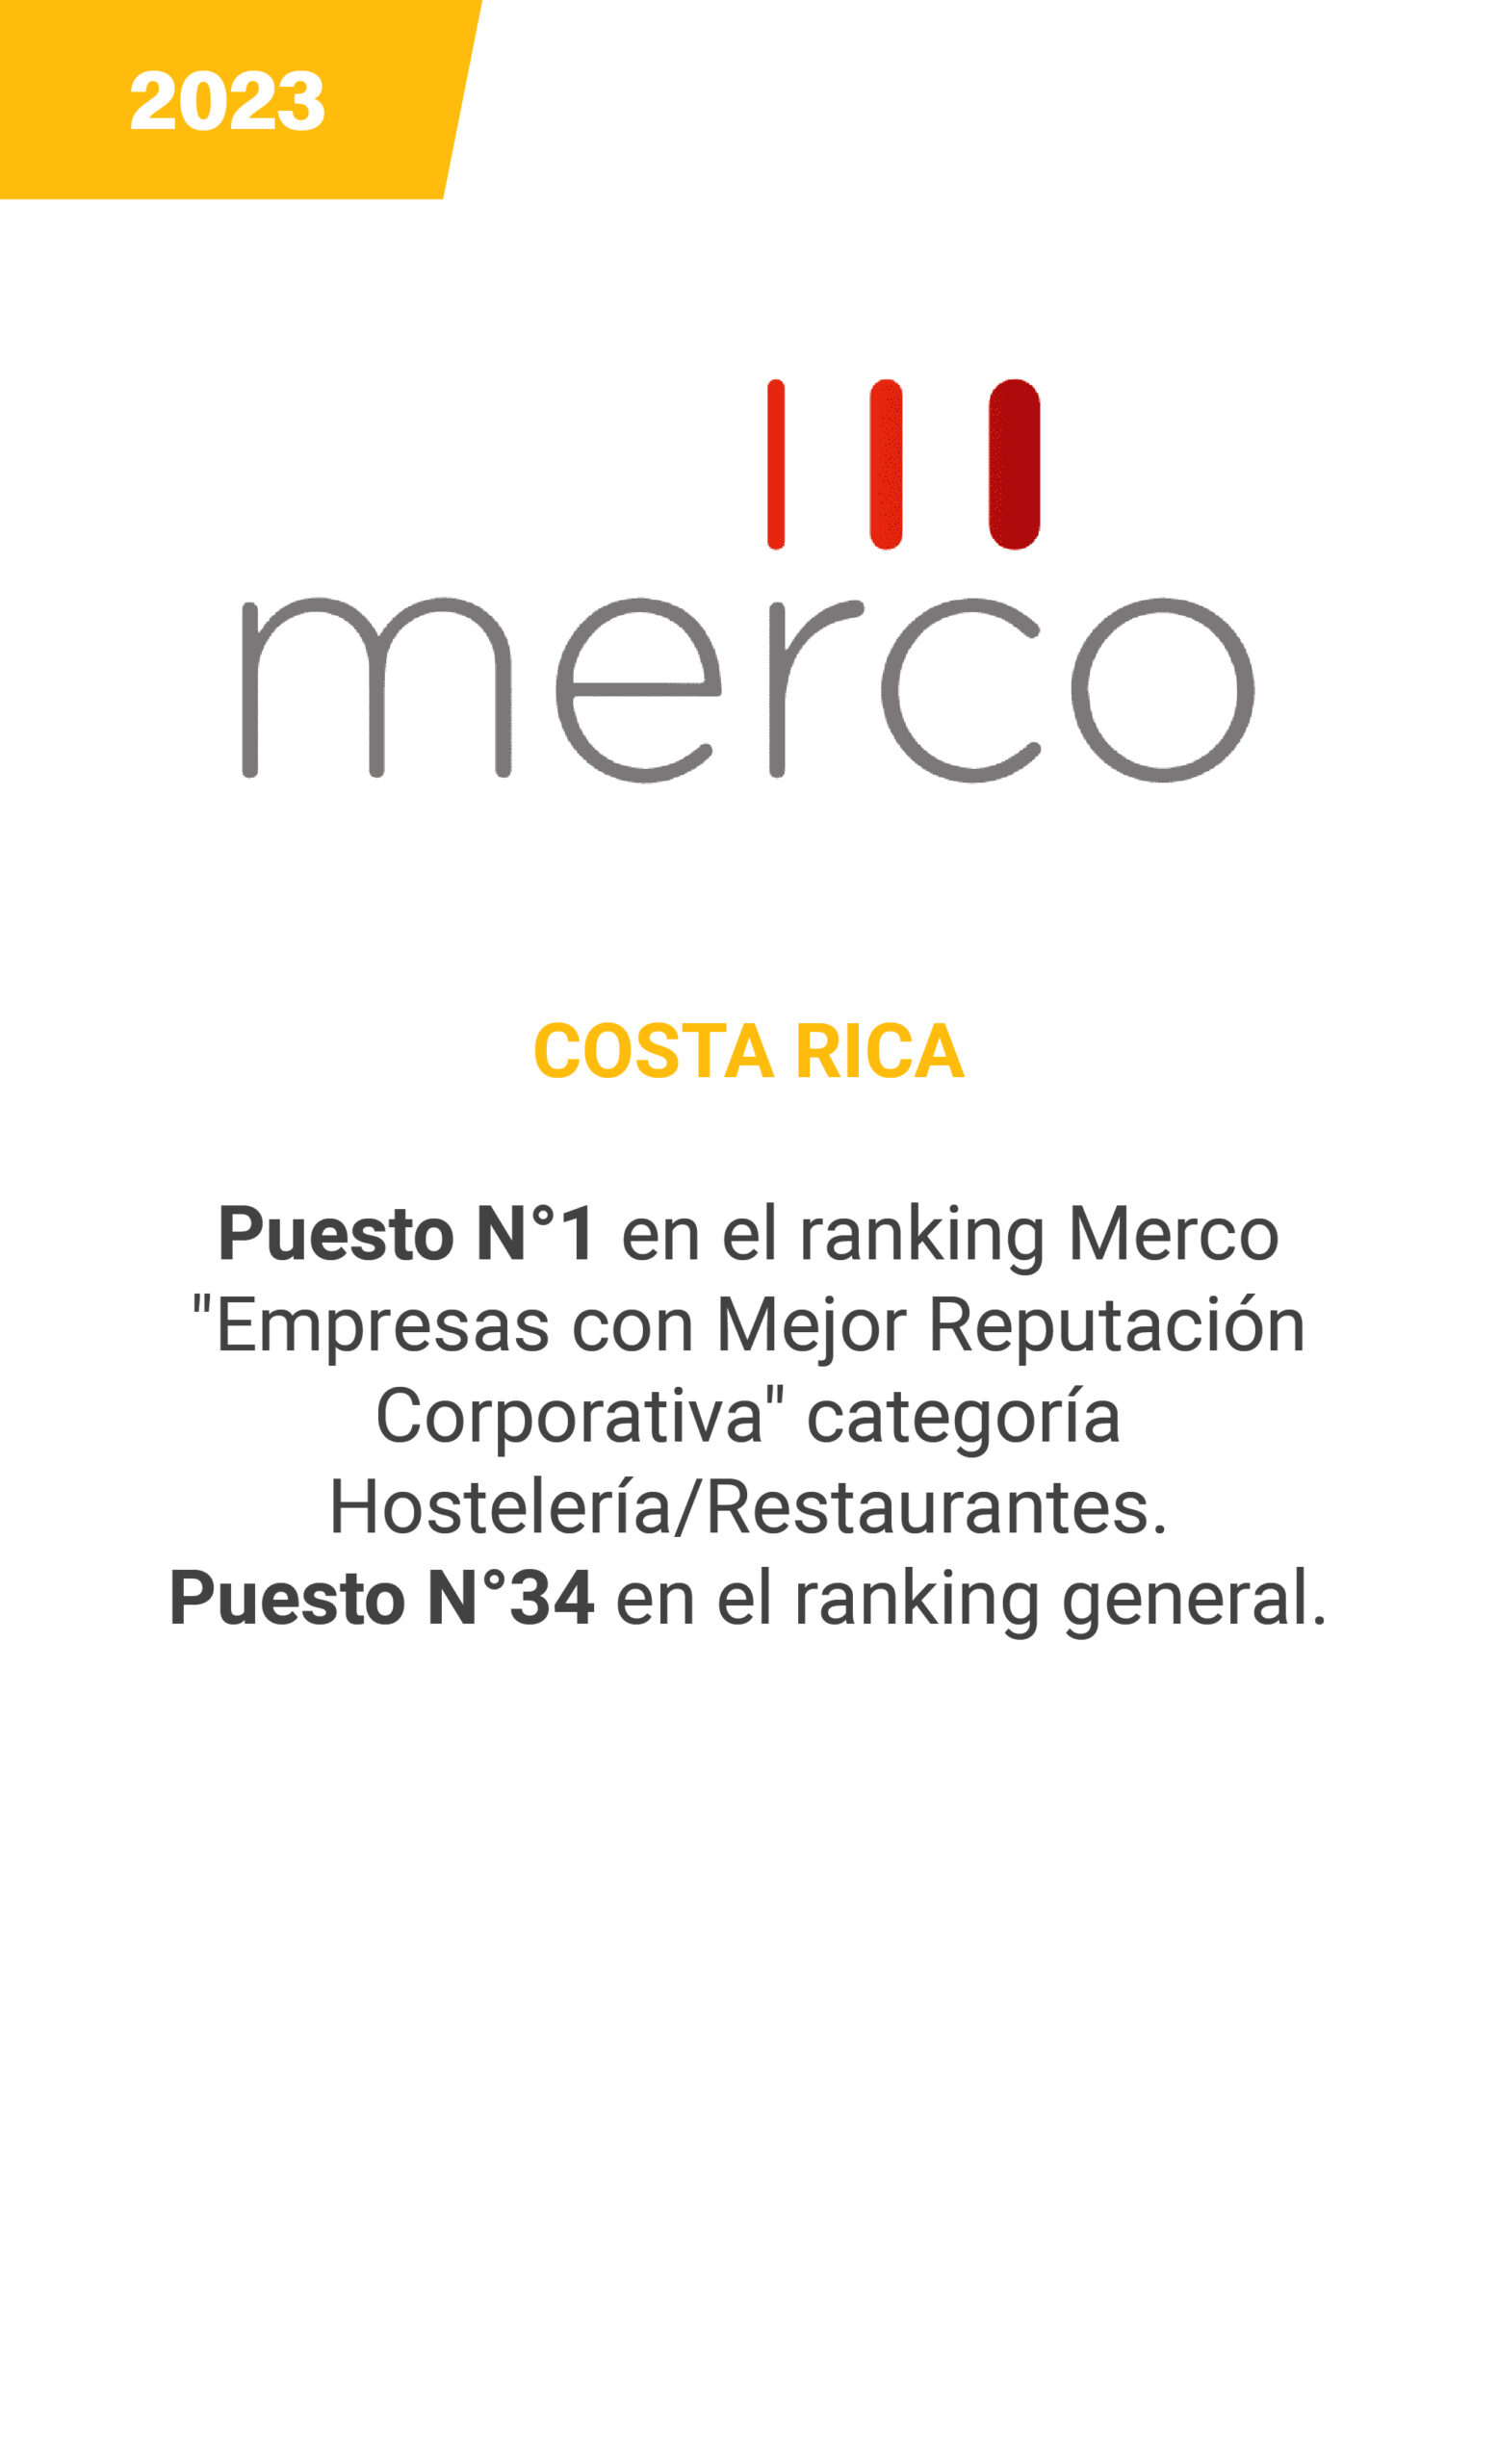 Merco - Costa Rica - mobile